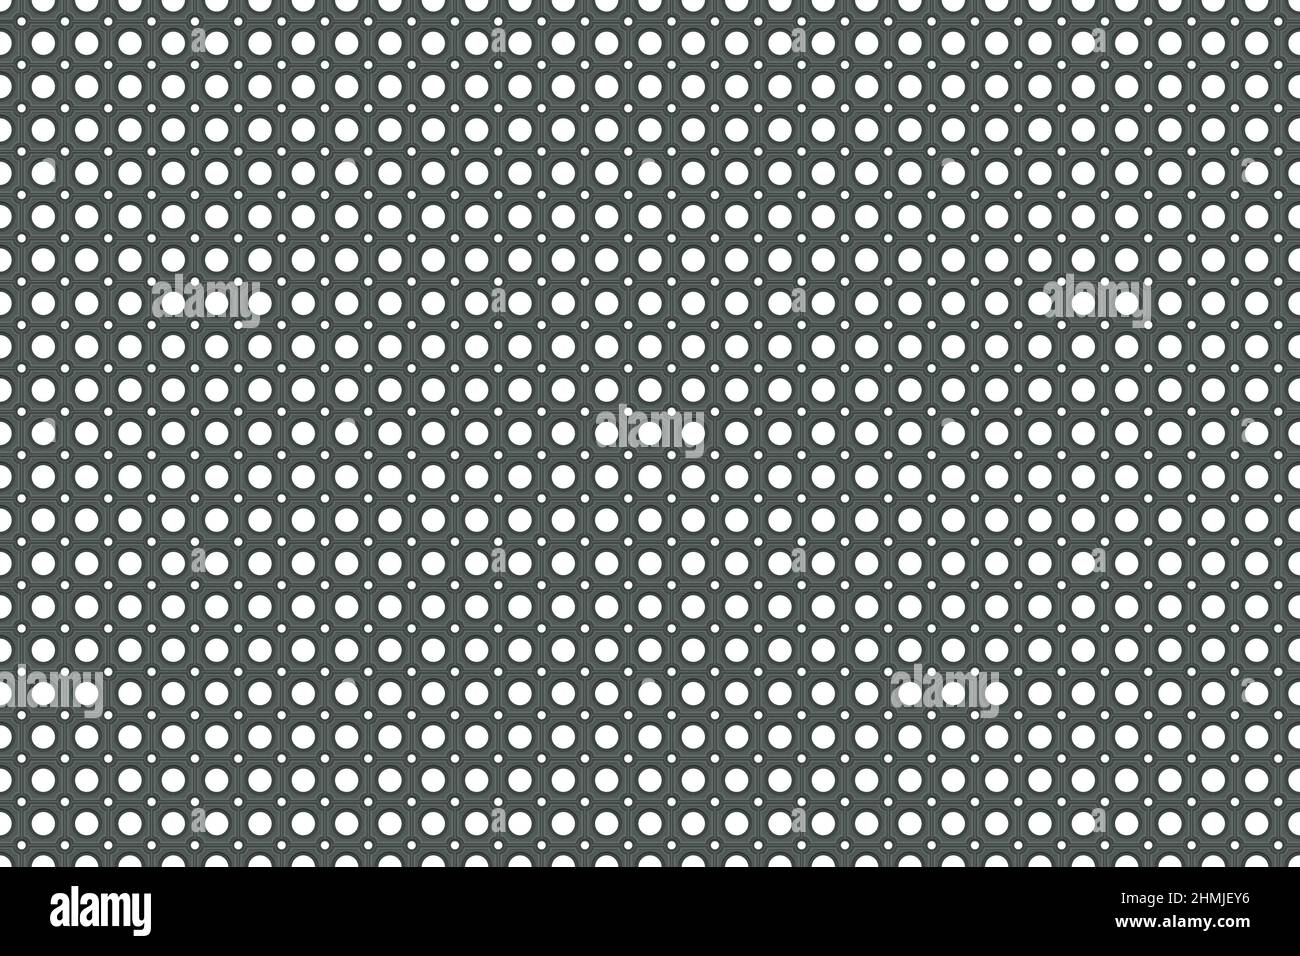 Dunkelgraues Gummi-Türbodenmatte nahtloses Muster. Teppich mit dunkler Eingangsoberfläche. Rutschfeste Sicherheitsunterlage für Auto, Büro, Haus, Geschäft für Schmutz oder e Stock Vektor